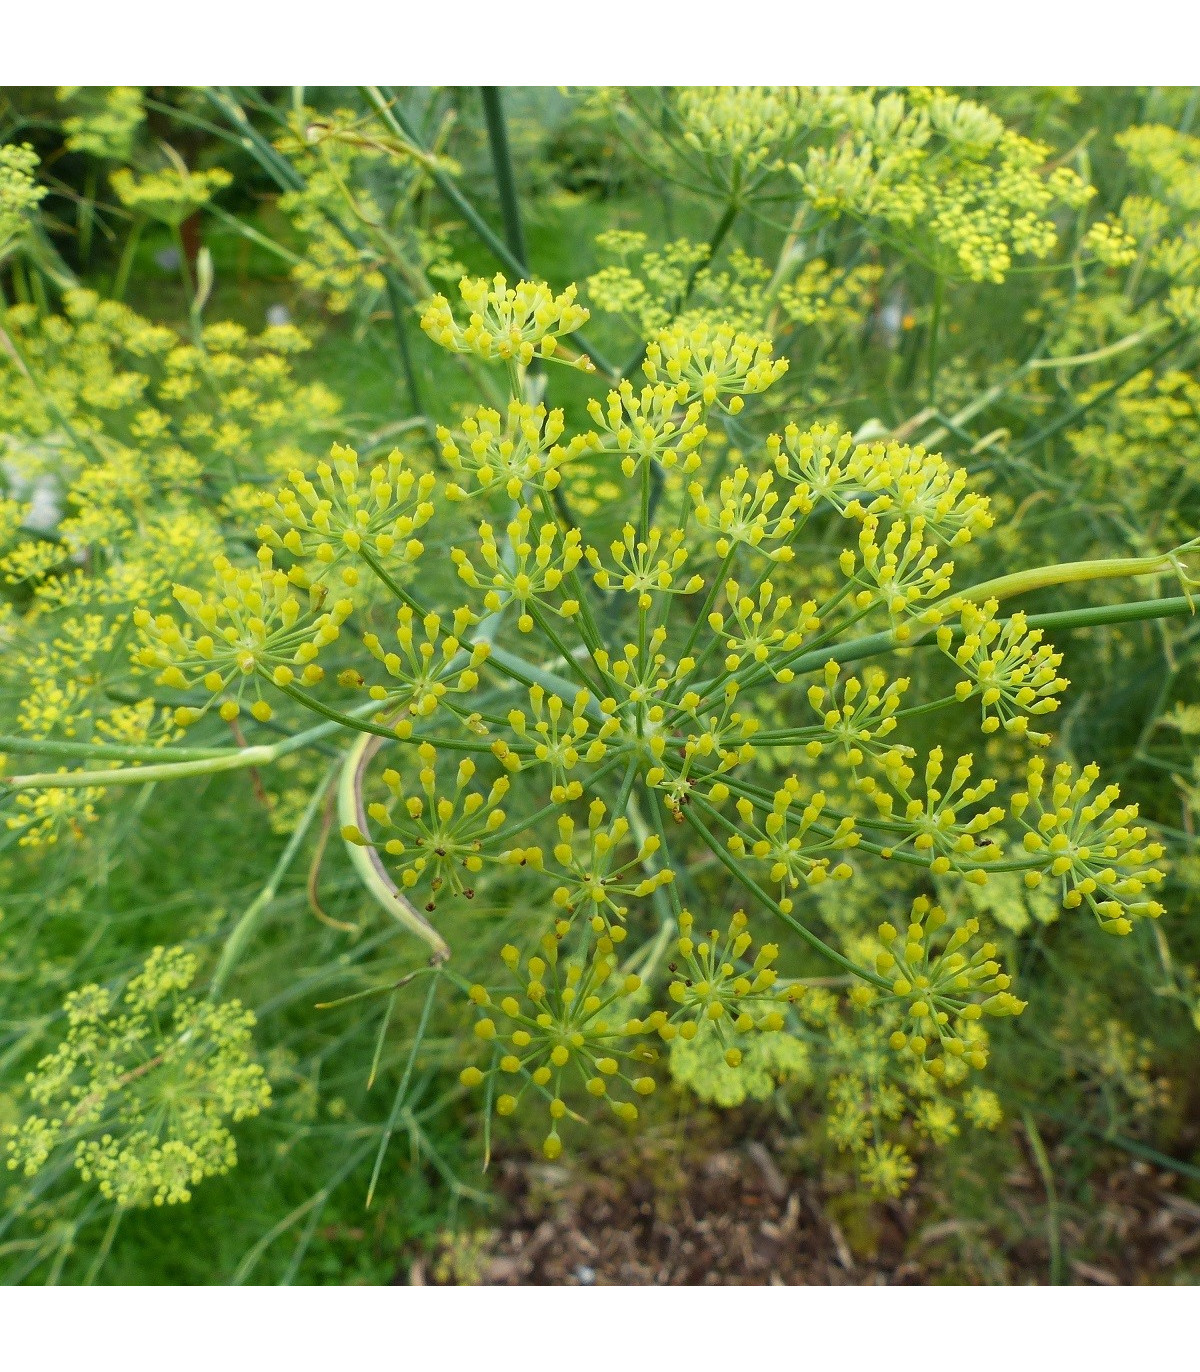 Bedrovník anízový - Pimpinella anisum - semená anízu - 250 ks